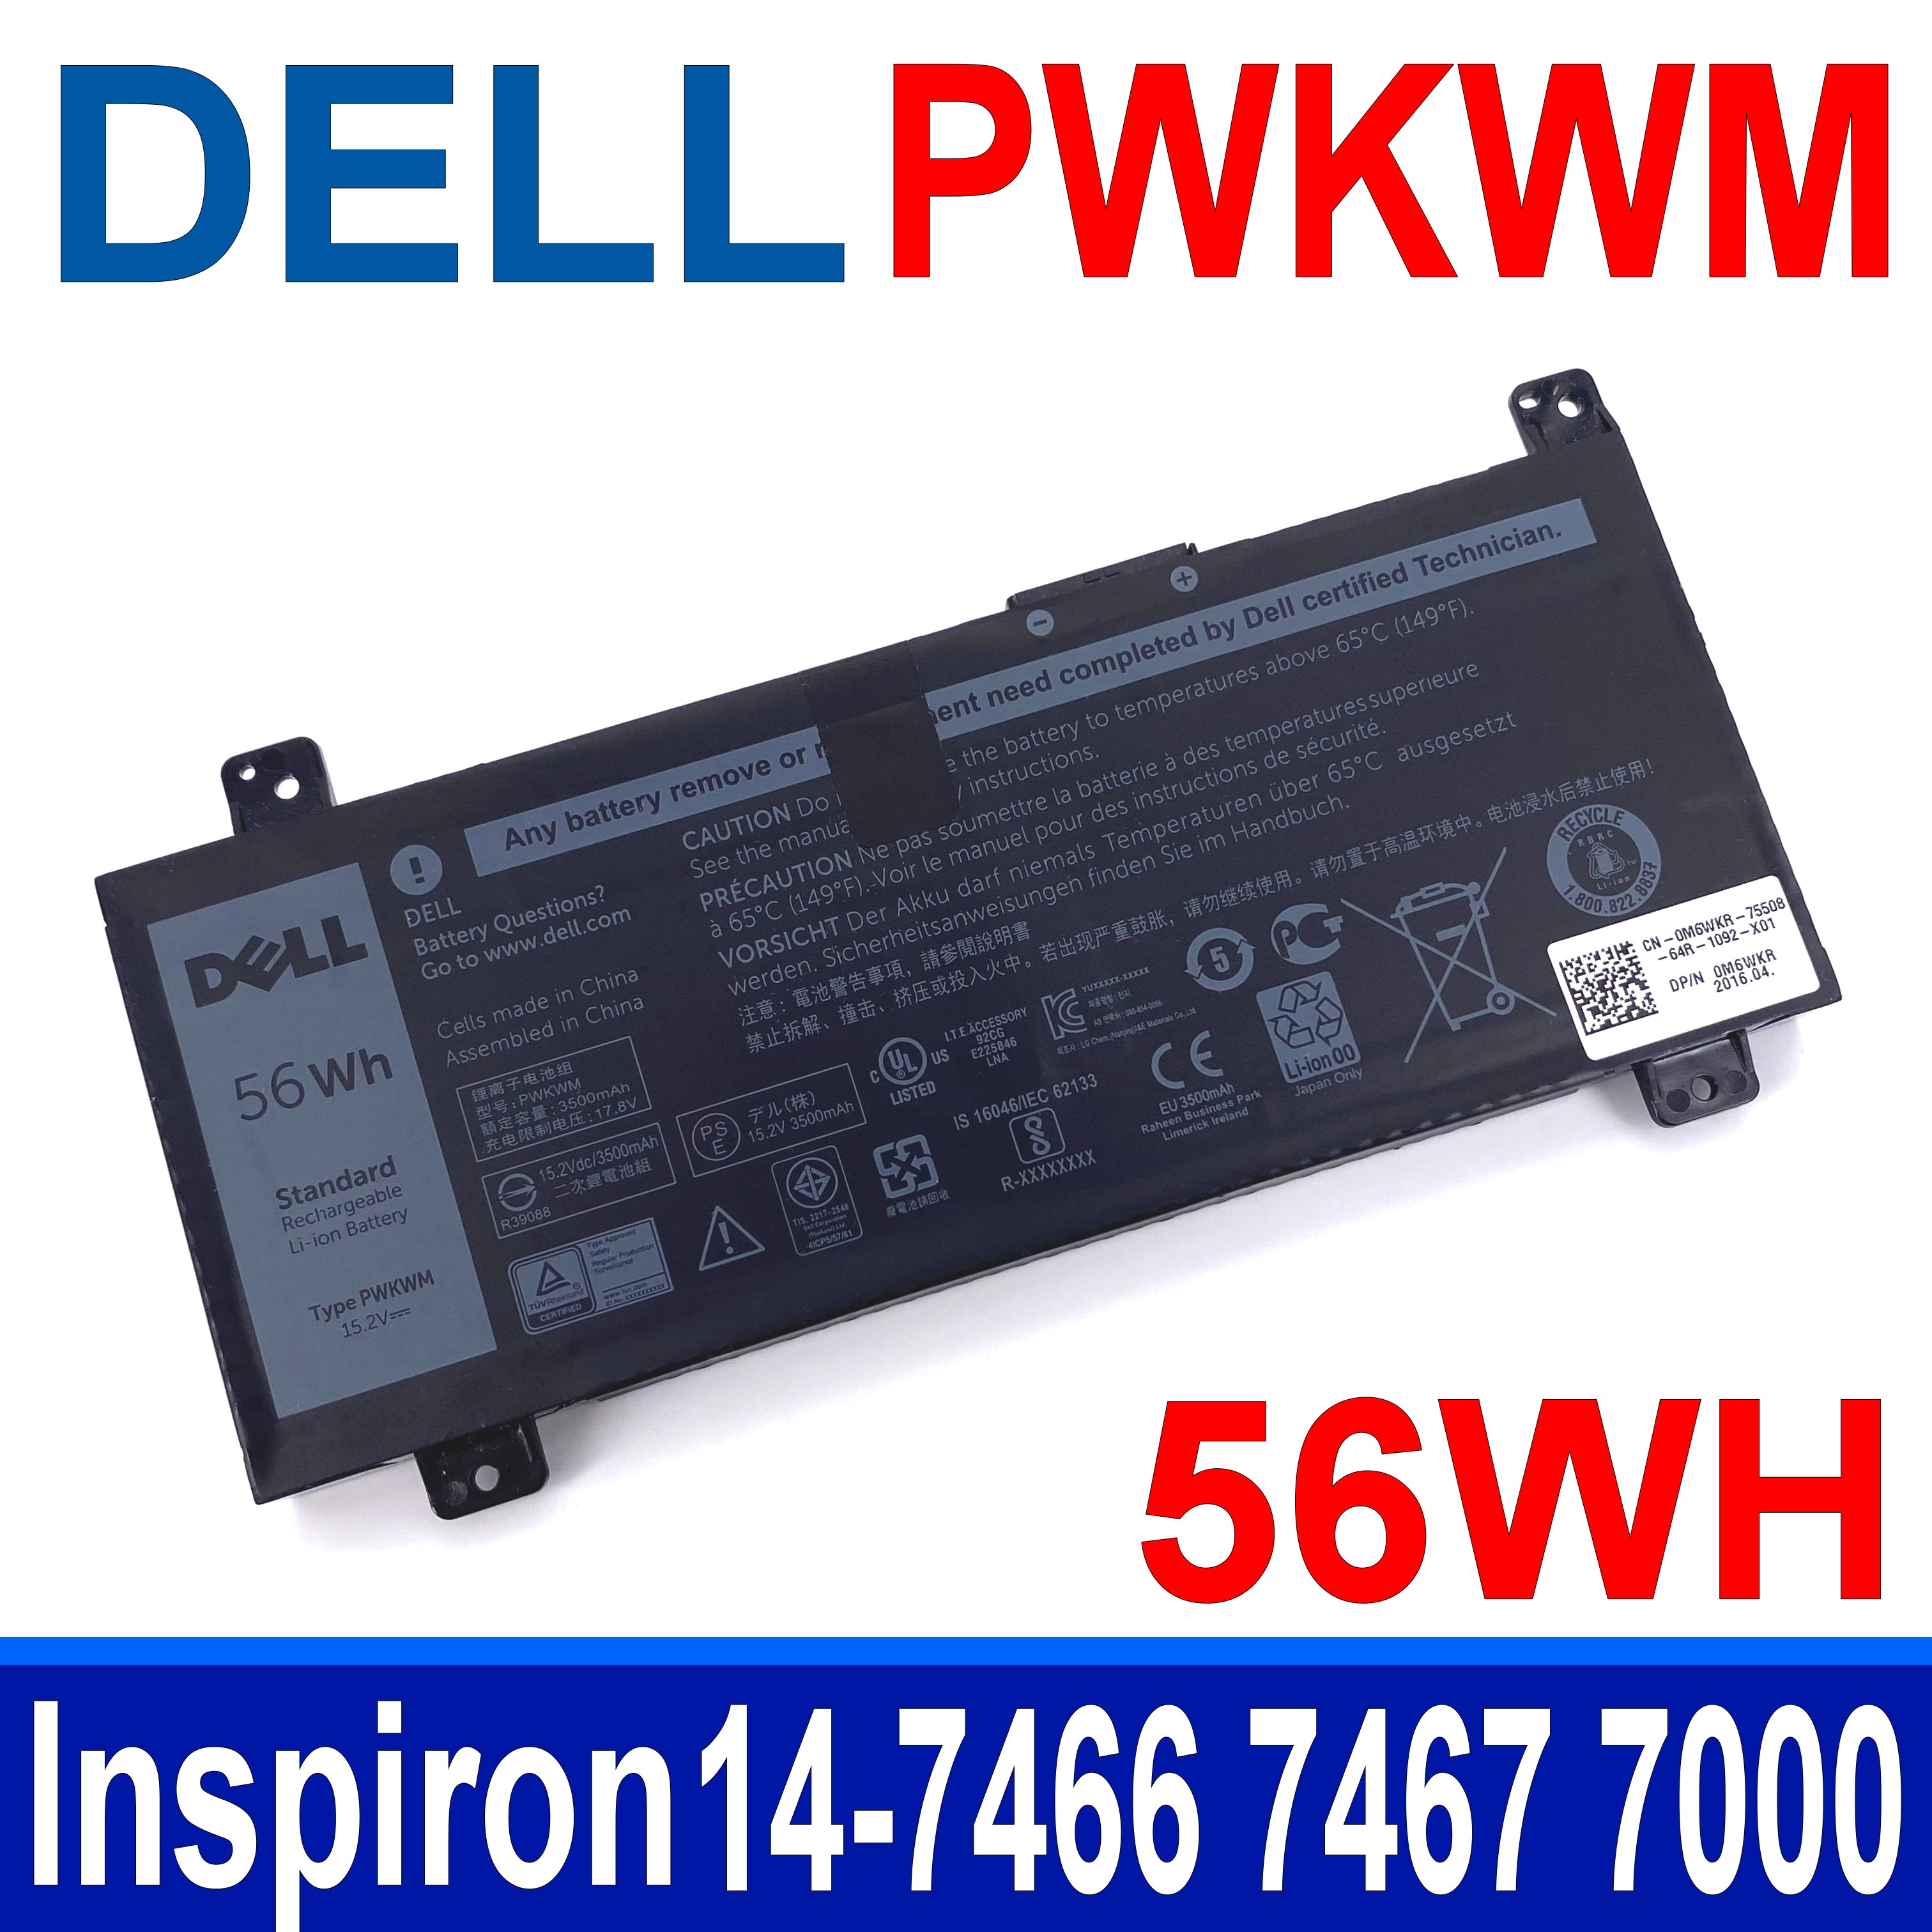 戴爾 DELL PWKWM 4芯 原廠電池 M6WKR P78G Inspiron 14-7466 7467 7000